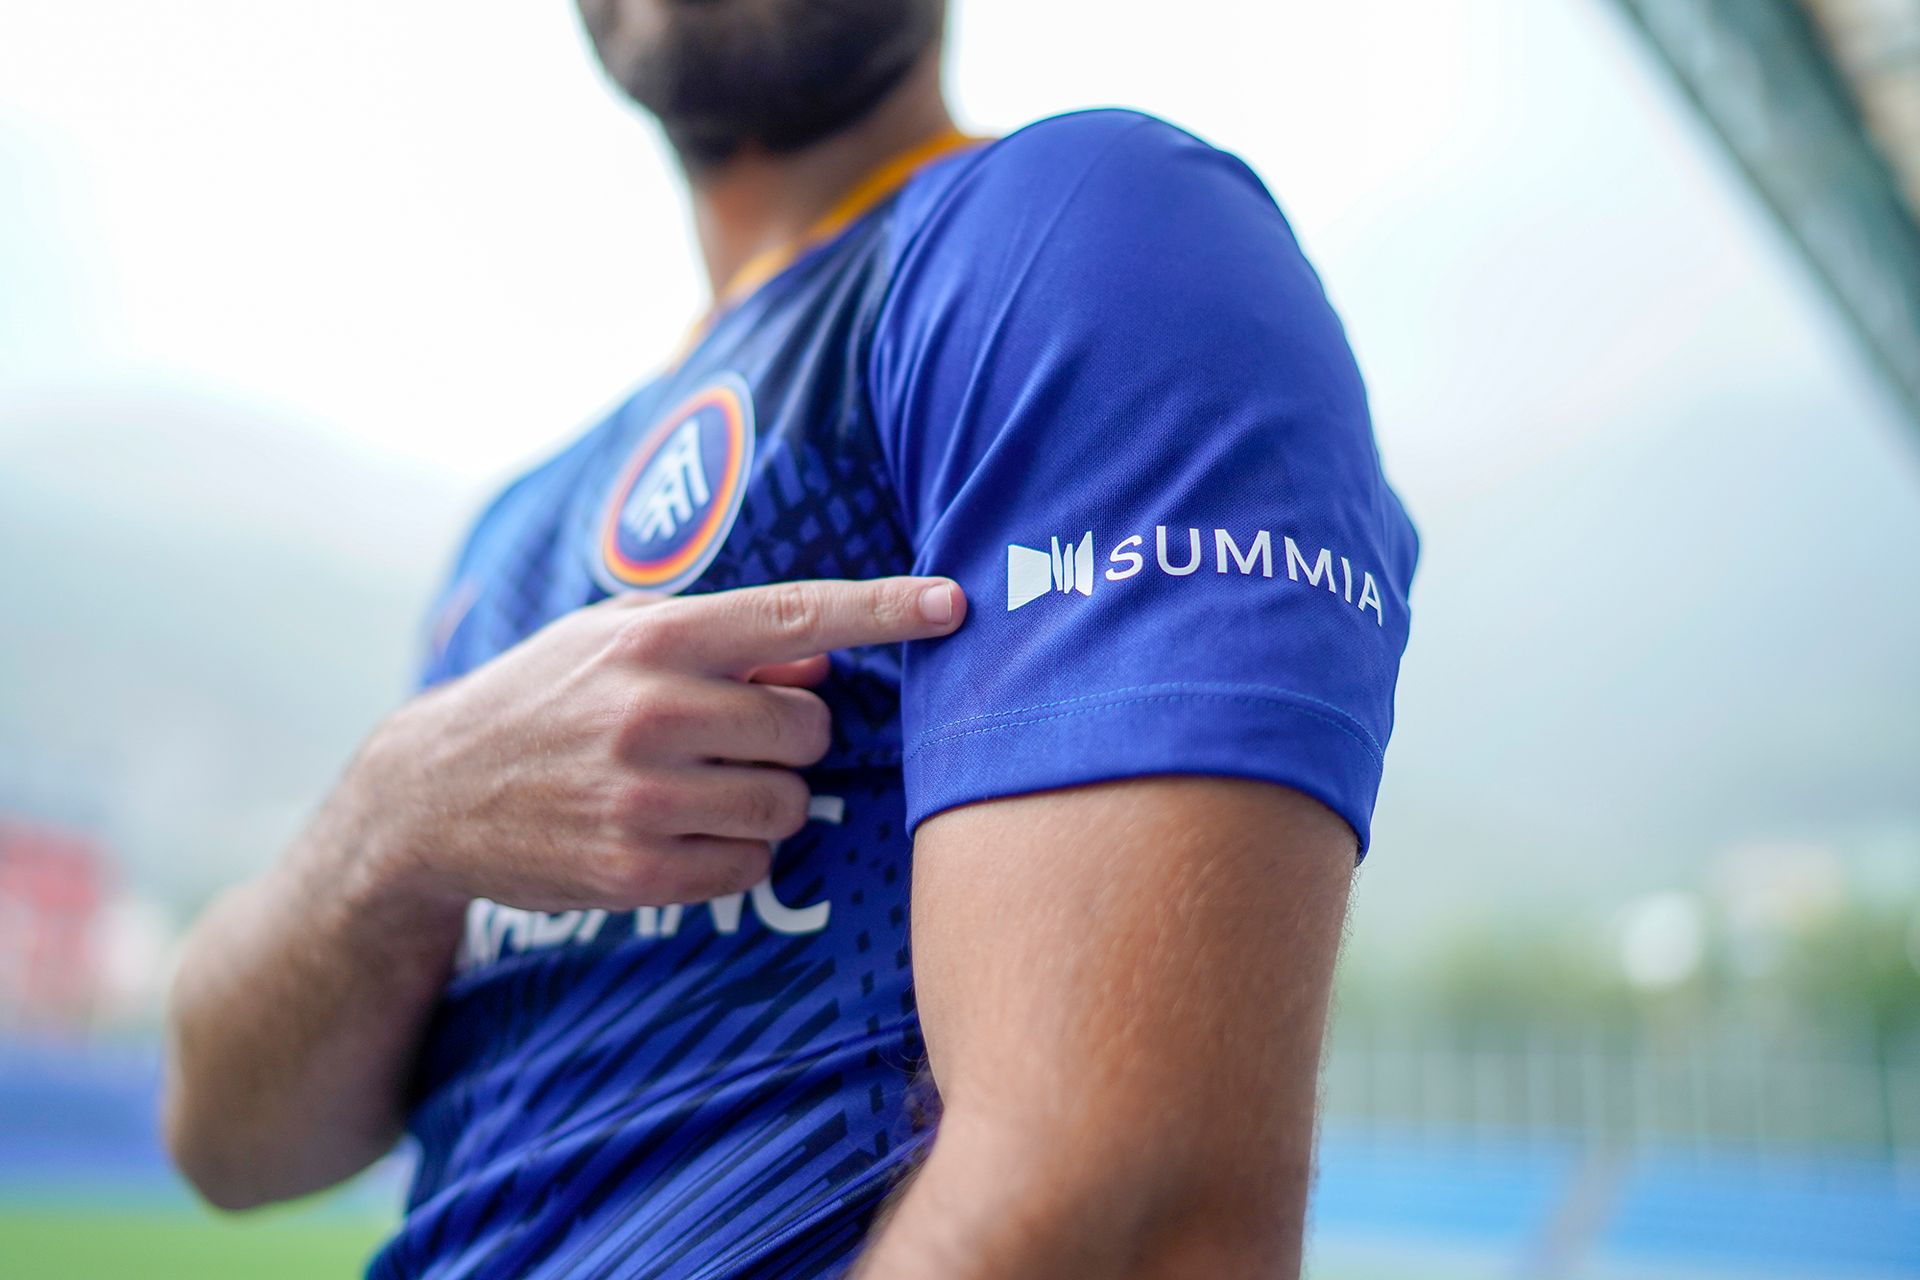 Summia, nou patrocinador per a la màniga de la samarreta